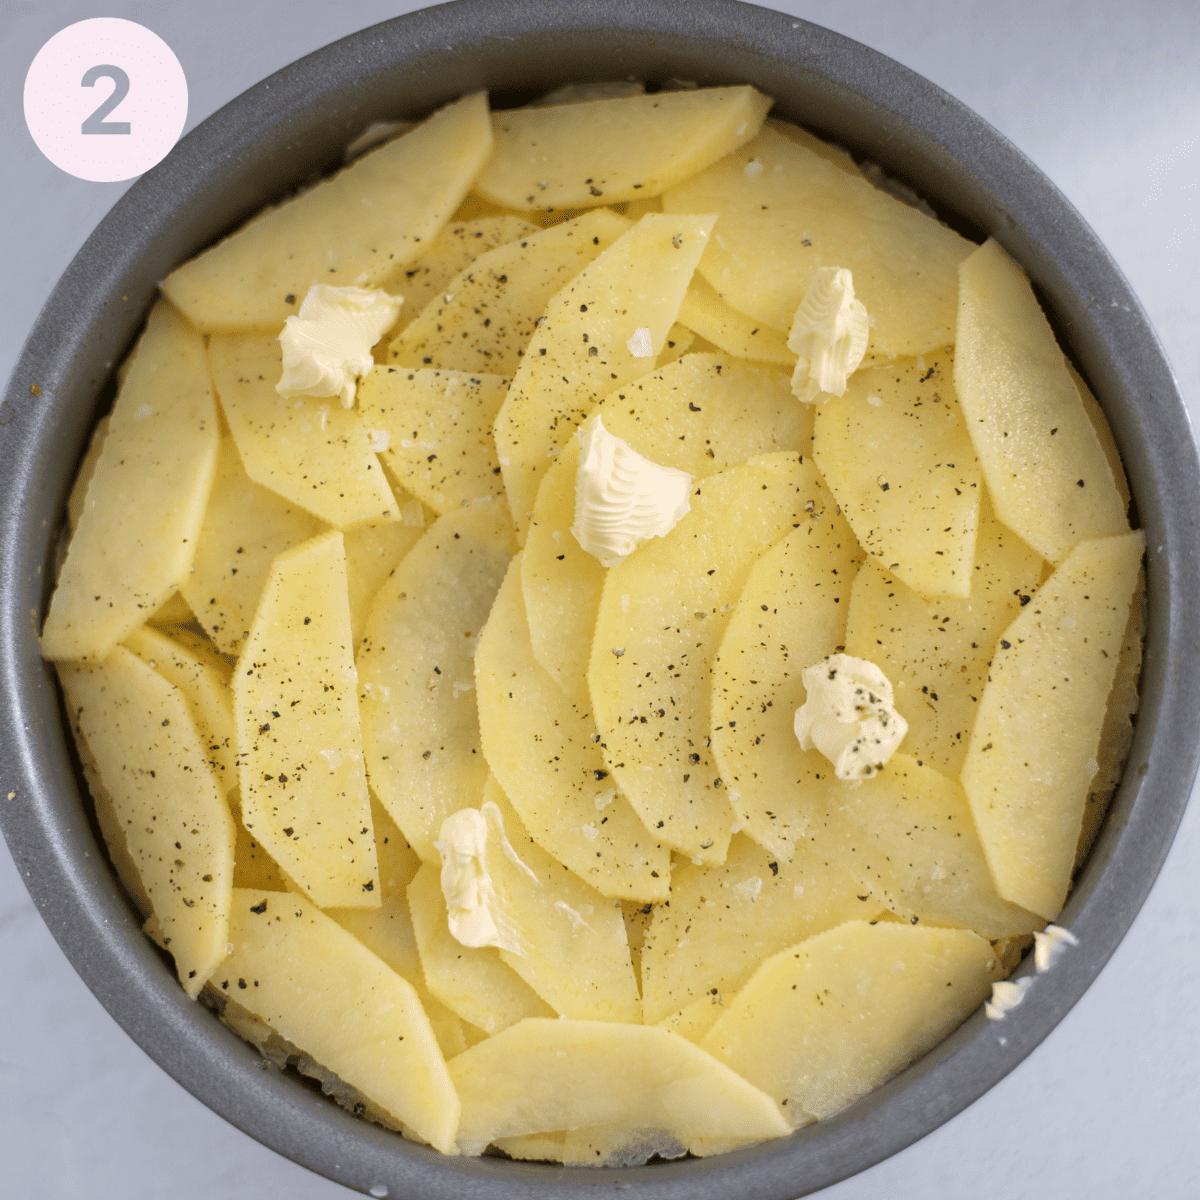 Layering up sliced potatoes.